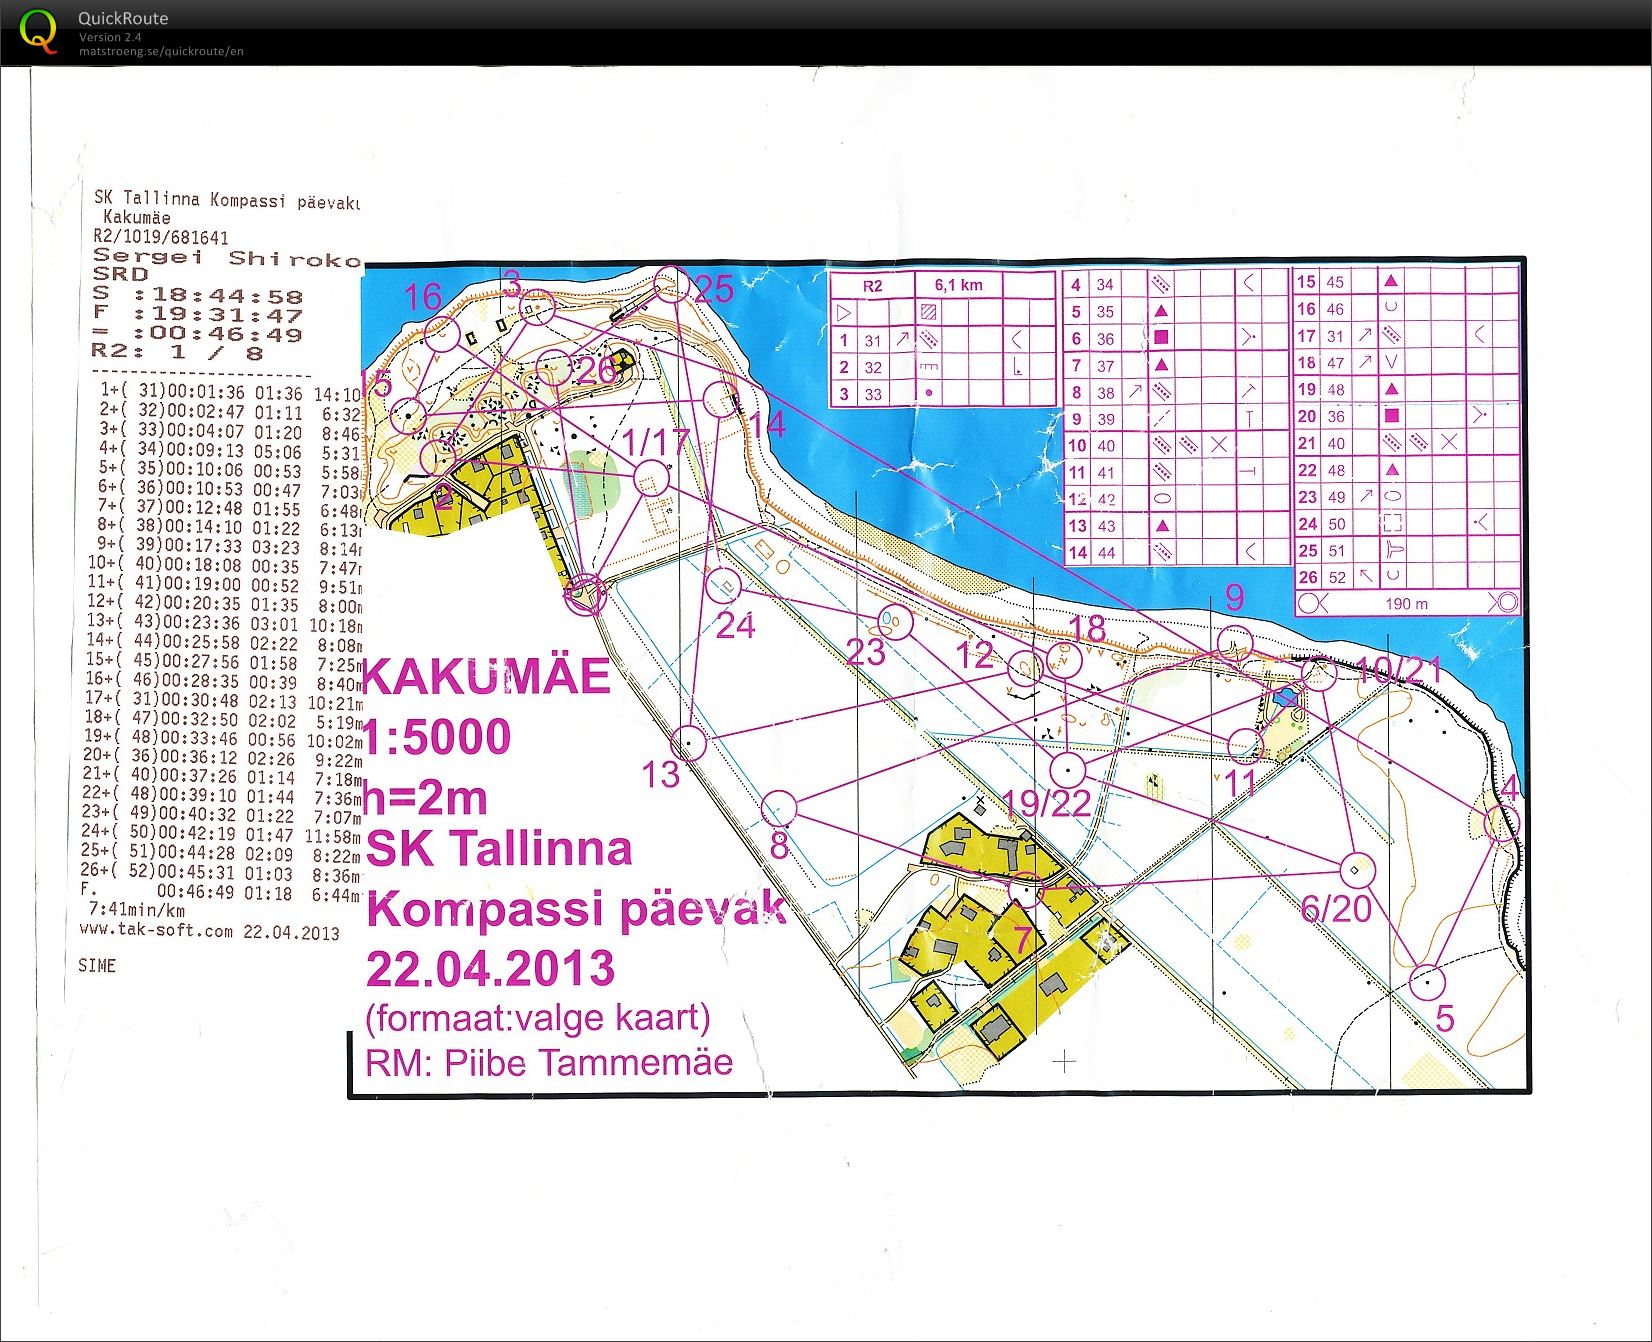 SK Tallinna Kompassi päevak (22.04.2013)